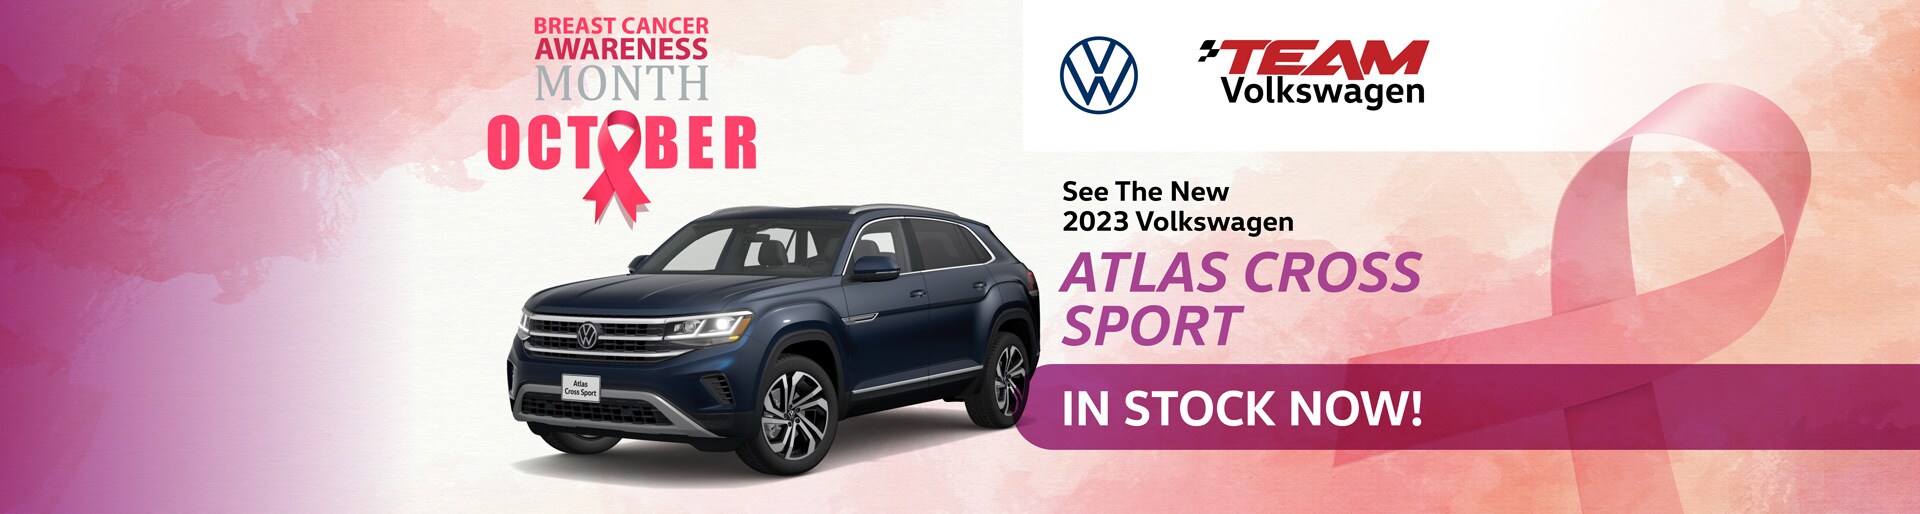 New 2023 Volkswagen Atlas Cross Sport in stock now!